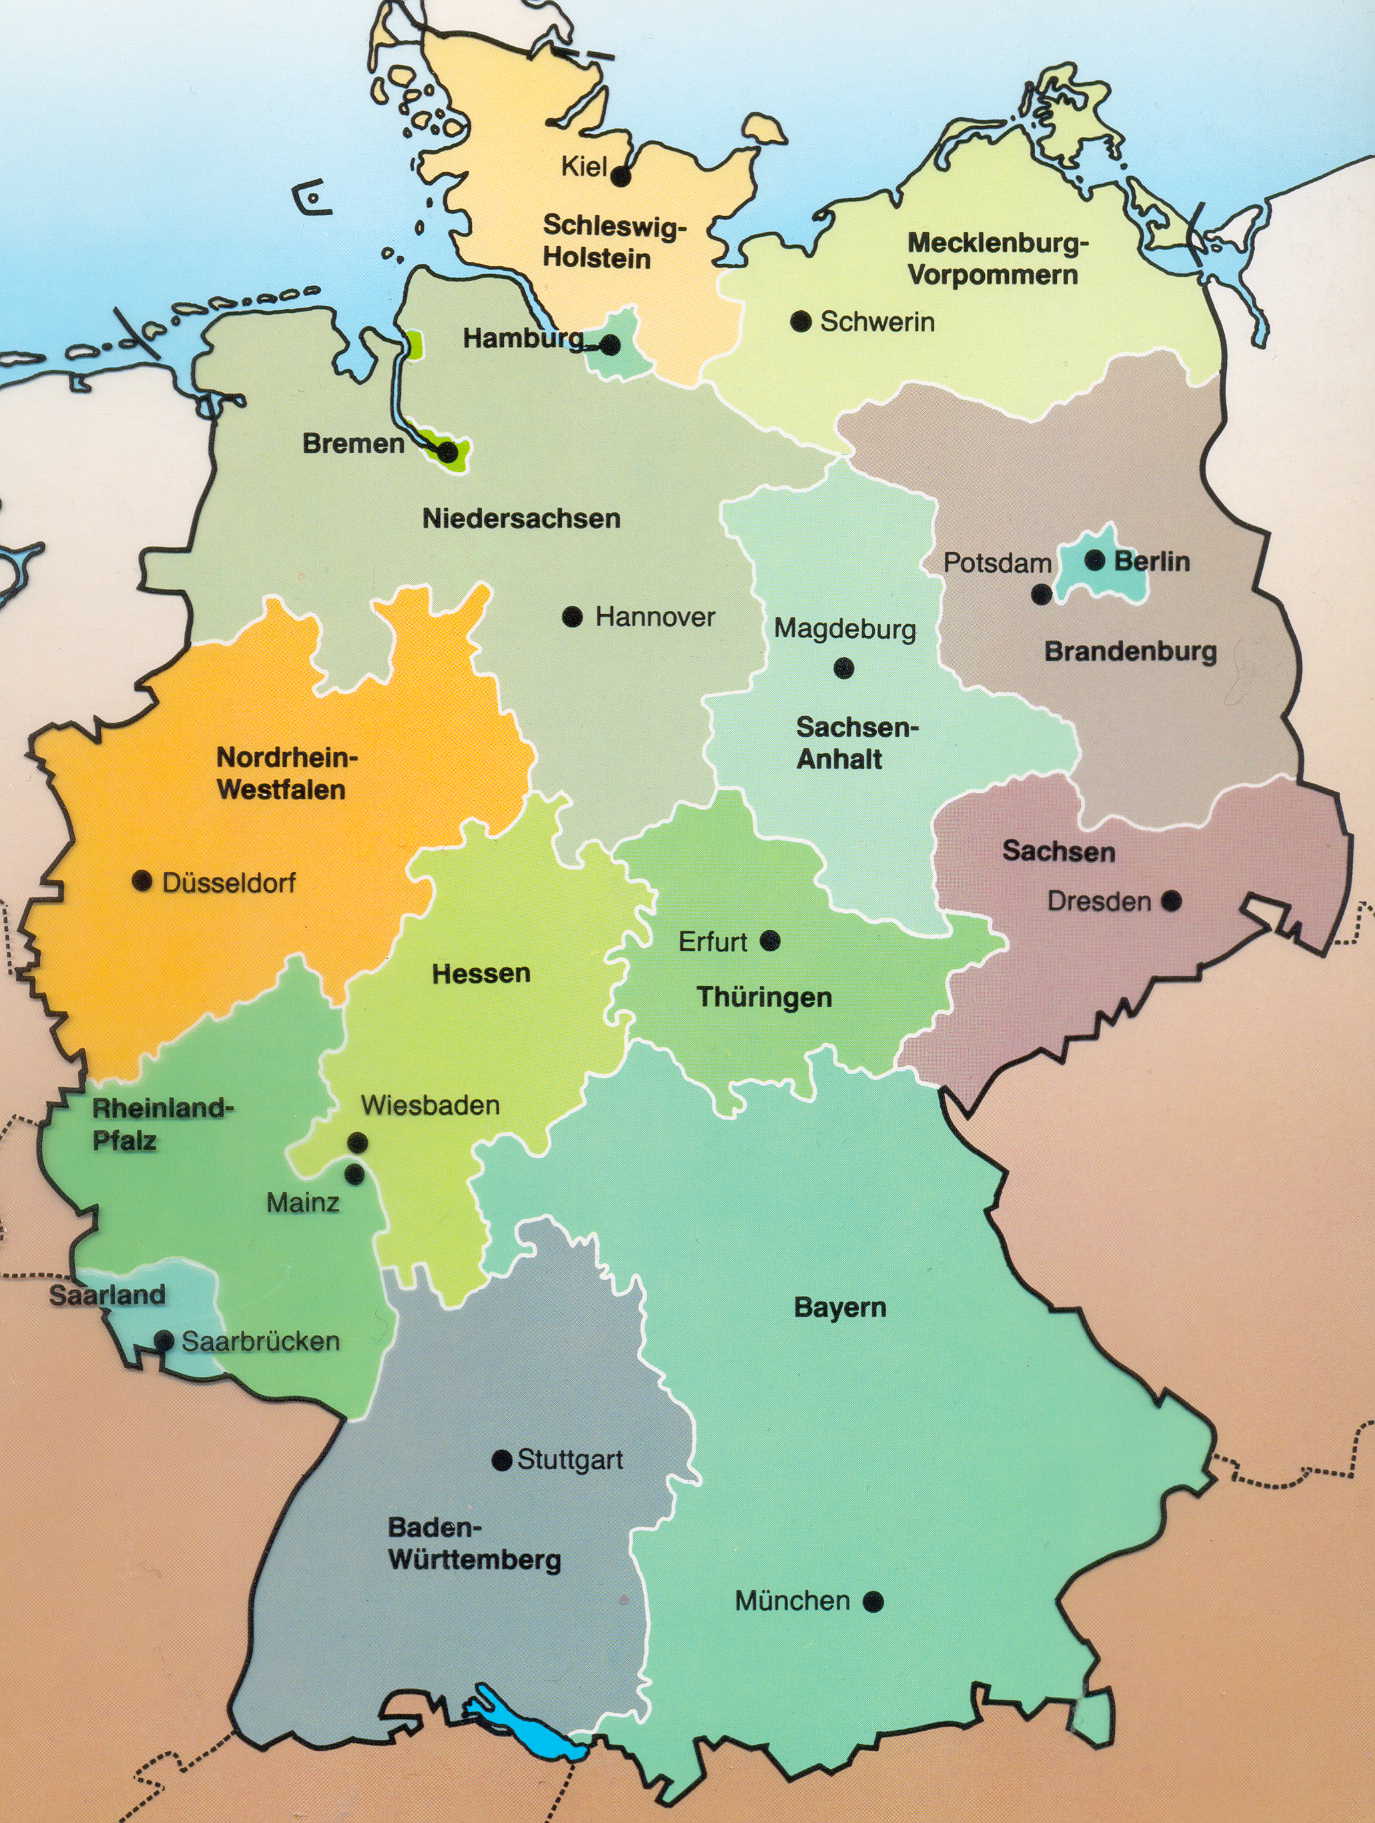 Разработка урока немецкого языка Meine Heimat c применением регионального компонента